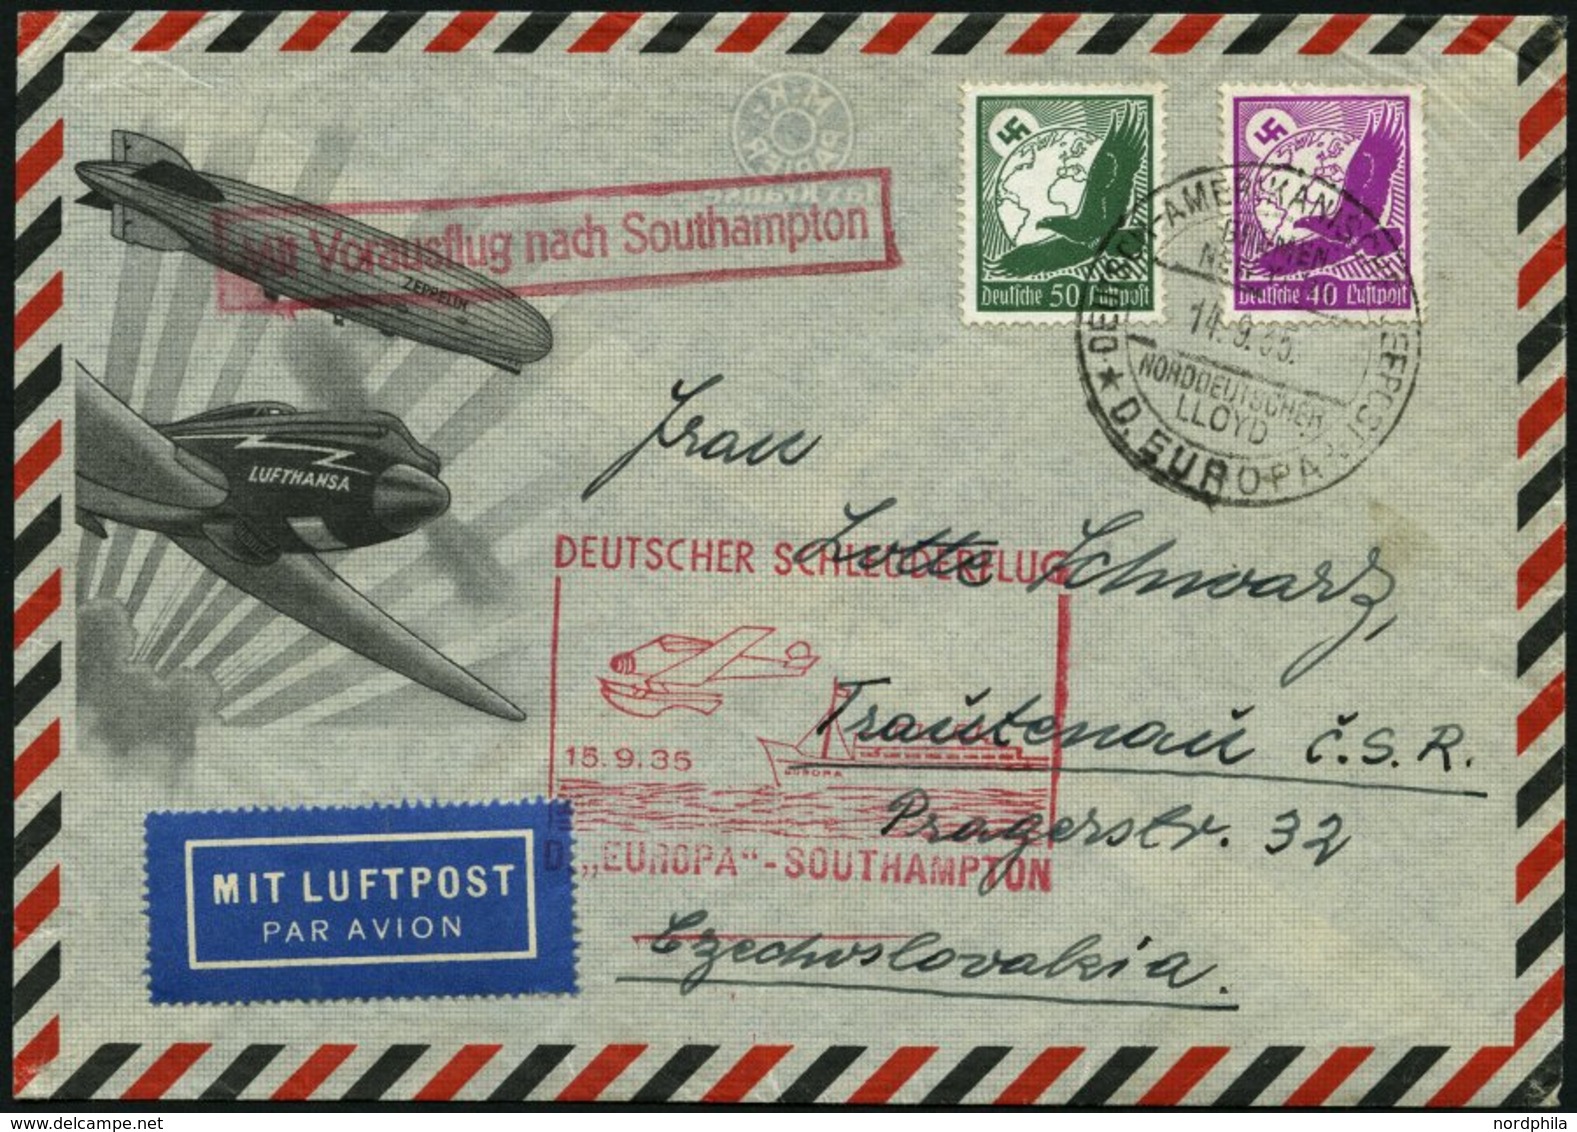 KATAPULTPOST 212c BRIEF, 15.9.1935, &quot,Europa&quot, - Southampton, Deutsche Seepostaufgabe, Prachtbrief - Lettres & Documents